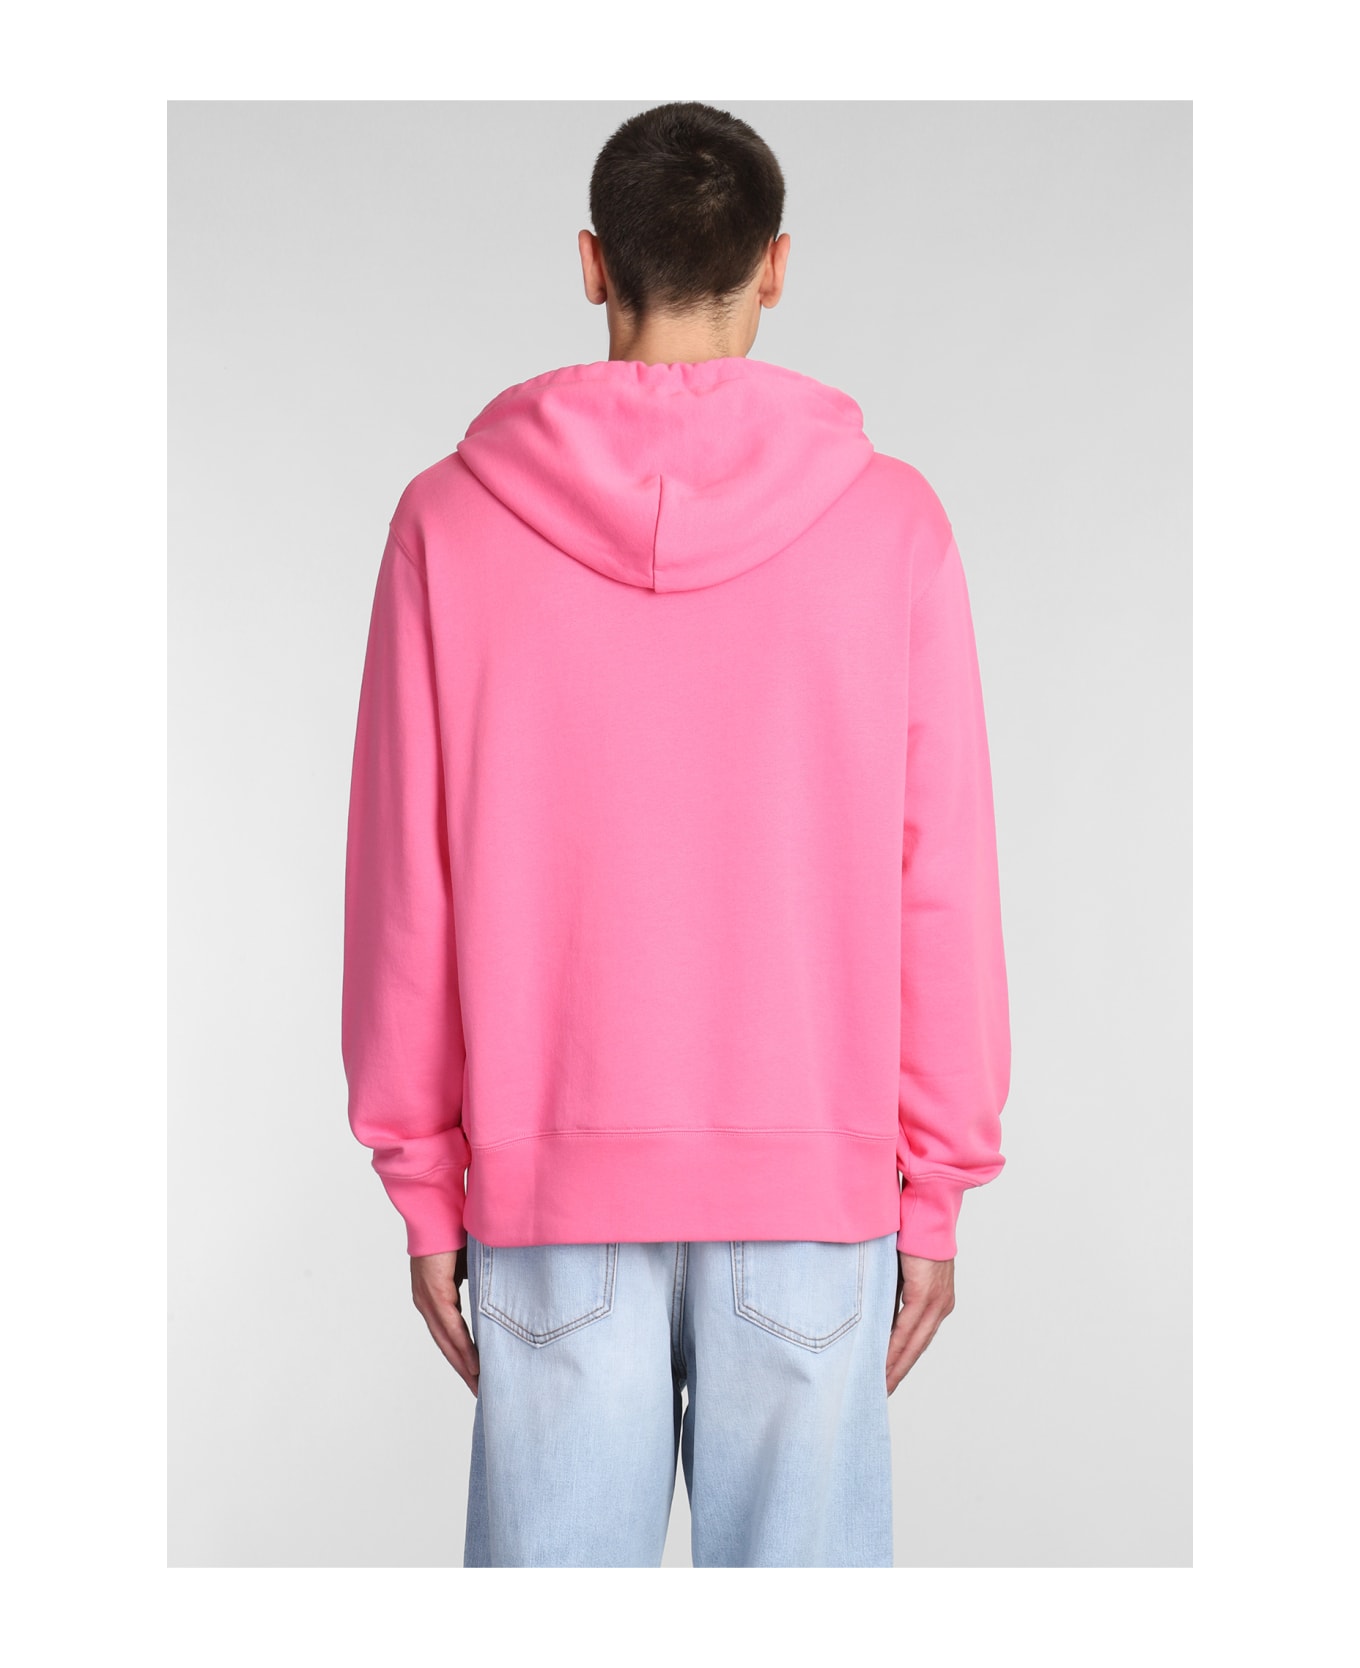 Acne Studios Sweatshirt In Rose-pink Cotton - rose-pink フリース